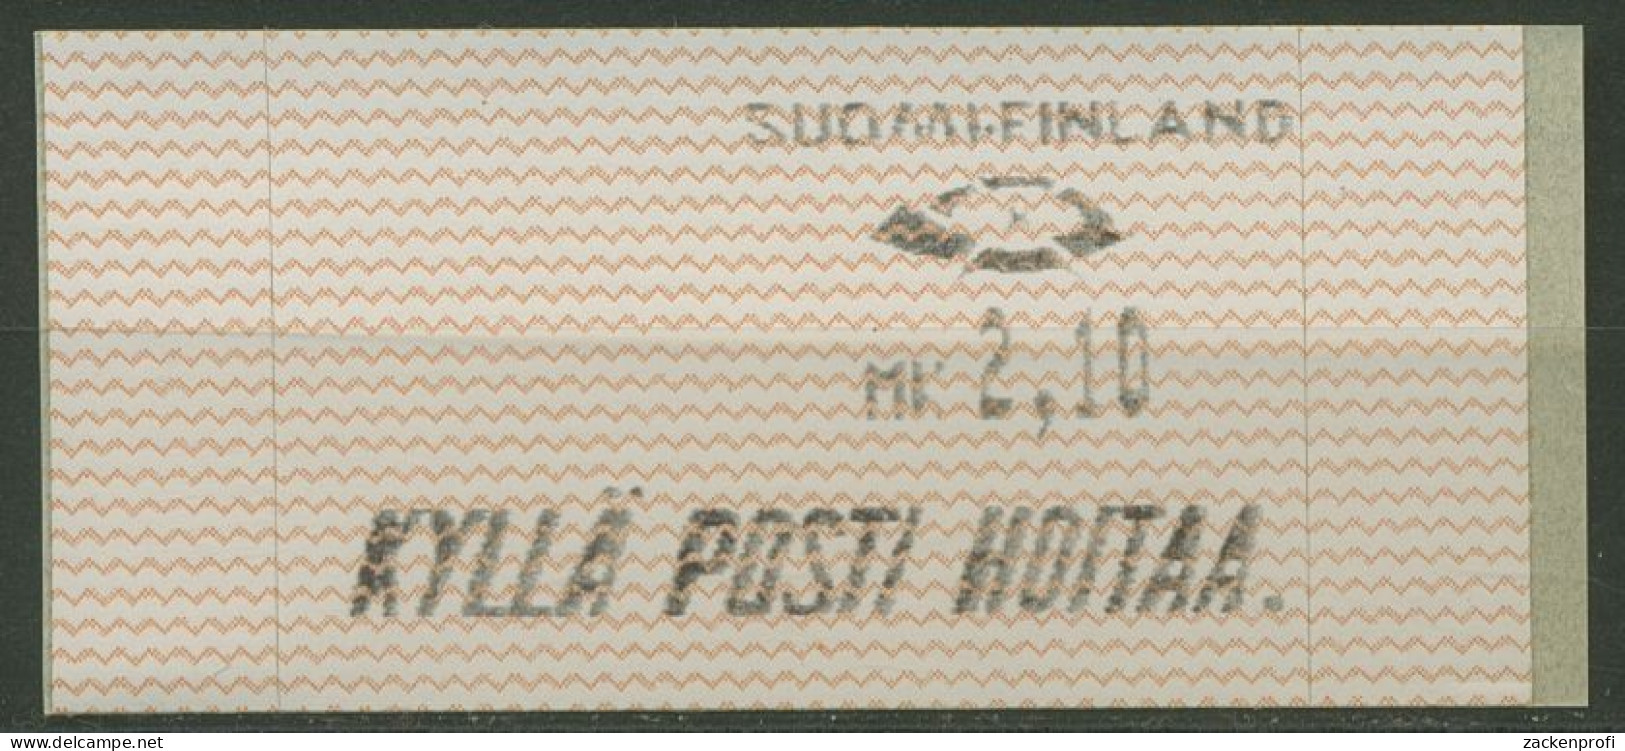 Finnland Automatenmarken 1991 Wellenlinien Einzelwert ATM 10.1 Z 1 Postfrisch - Machine Labels [ATM]